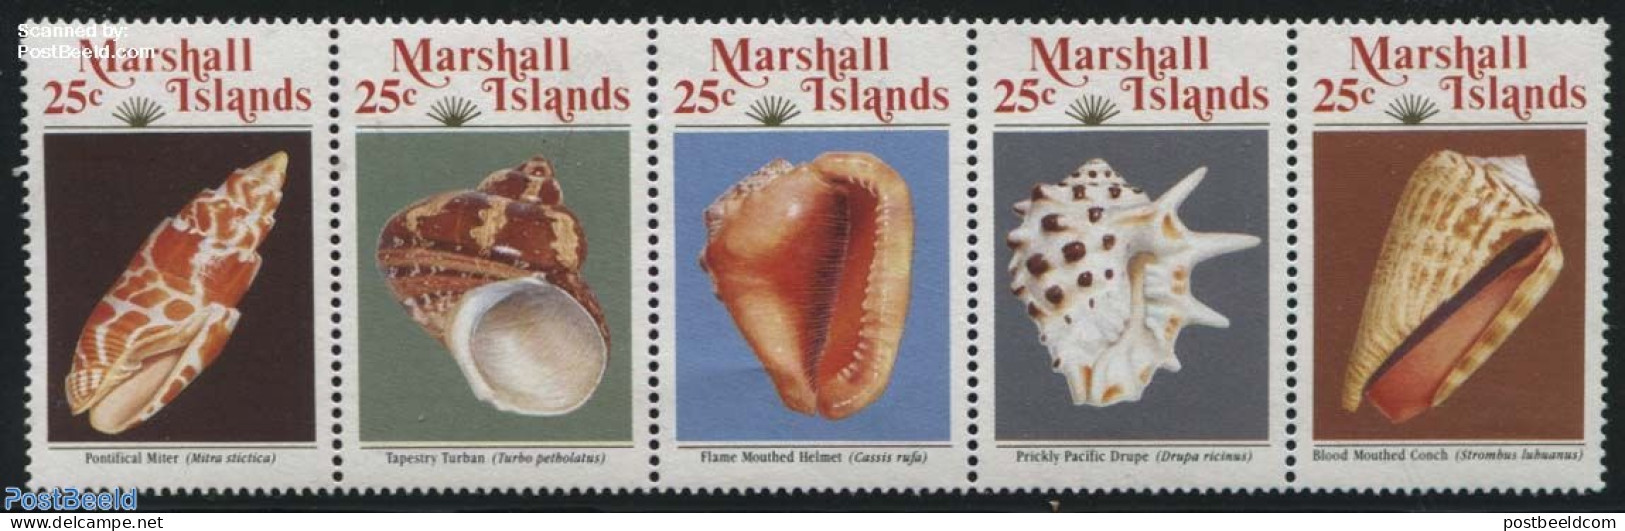 Marshall Islands 1989 Shells 5v [::::], Mint NH, Nature - Shells & Crustaceans - Mundo Aquatico